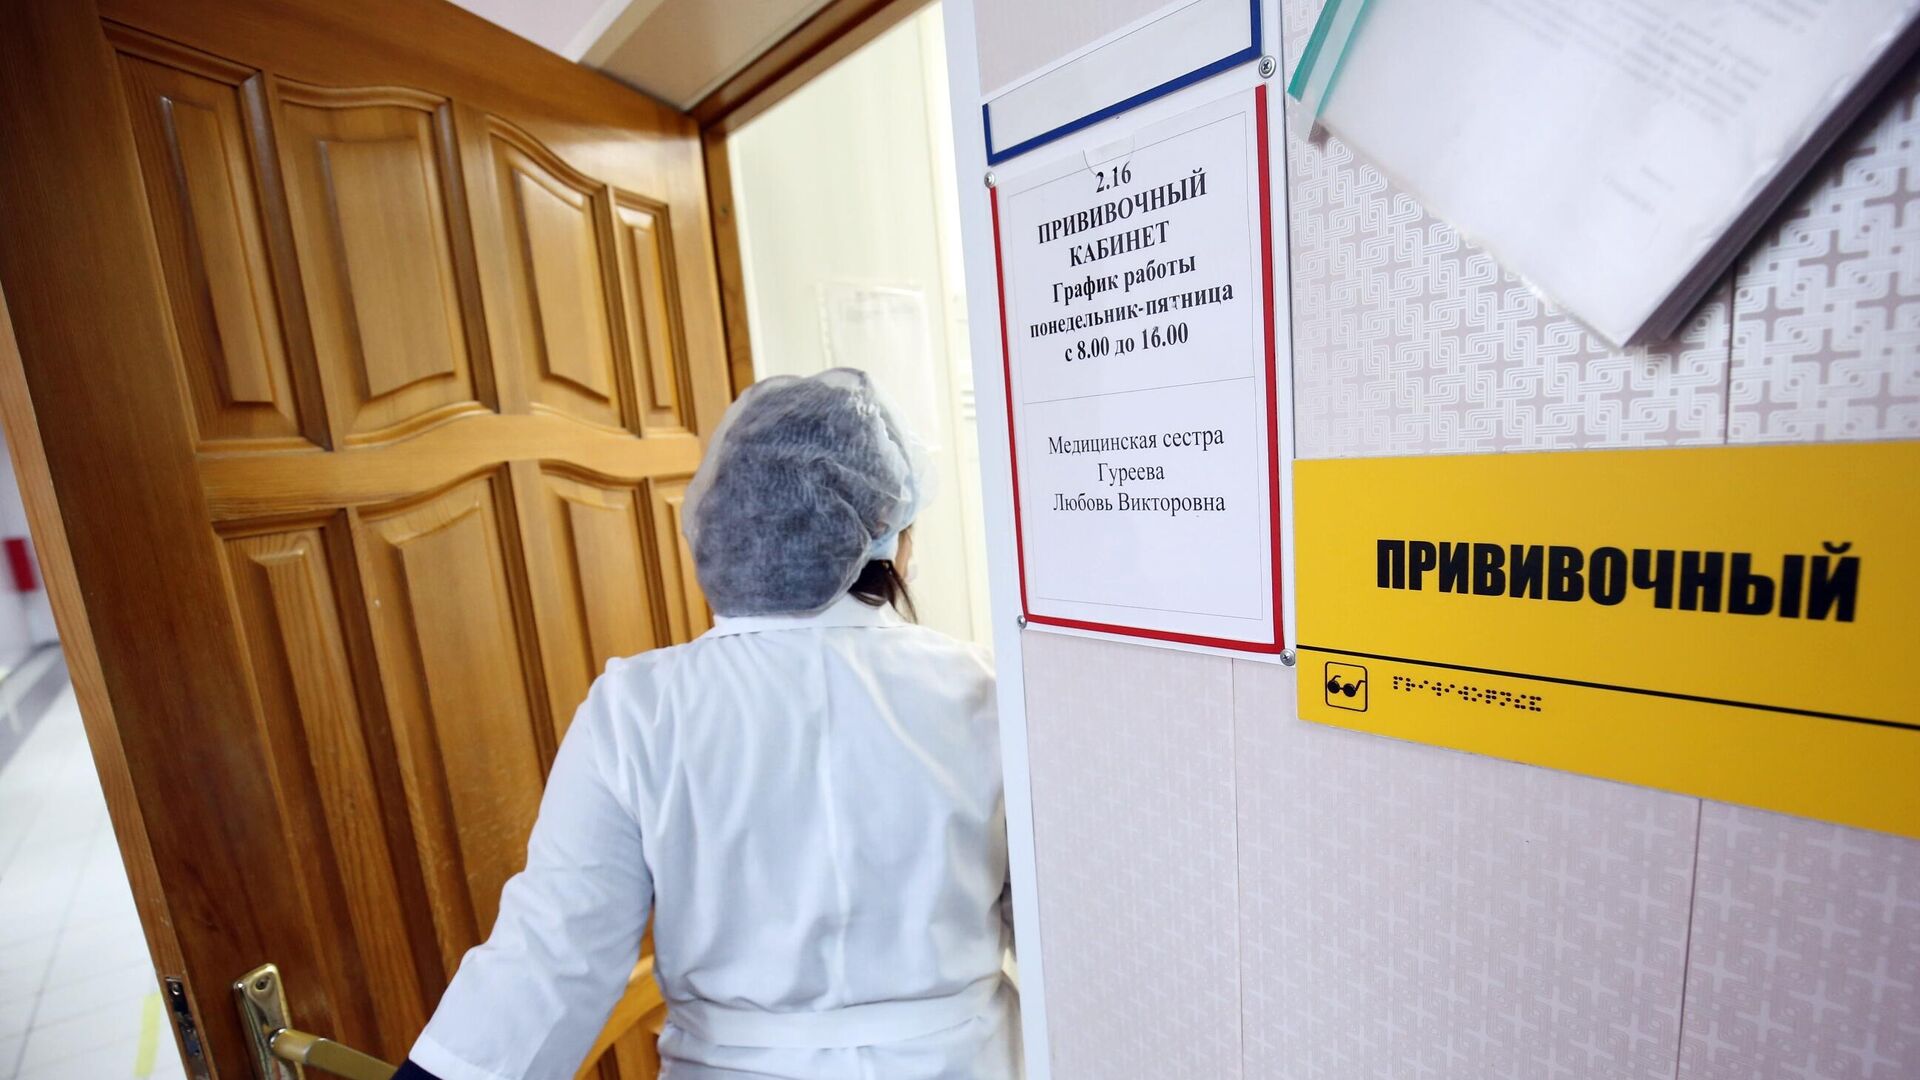 Прививочный кабинет в городской поликлинике № 2 в Волгограде - РИА Новости, 1920, 12.11.2020